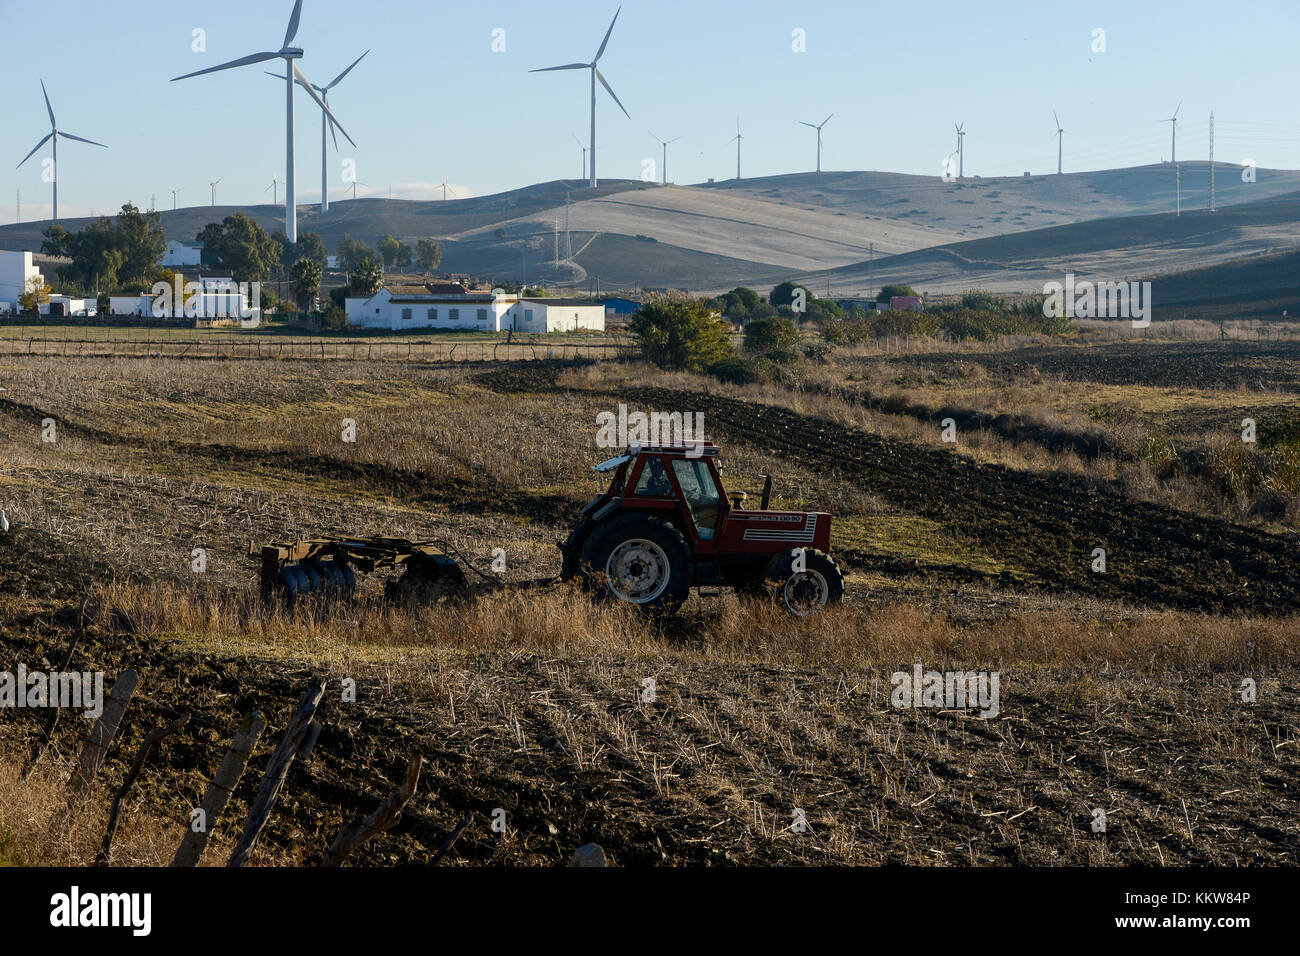 Espagne, Andalousie, Cadix, village de la Zarzuela, le parc éolien dans la montagne, champ de labour tracteur Fiat Banque D'Images